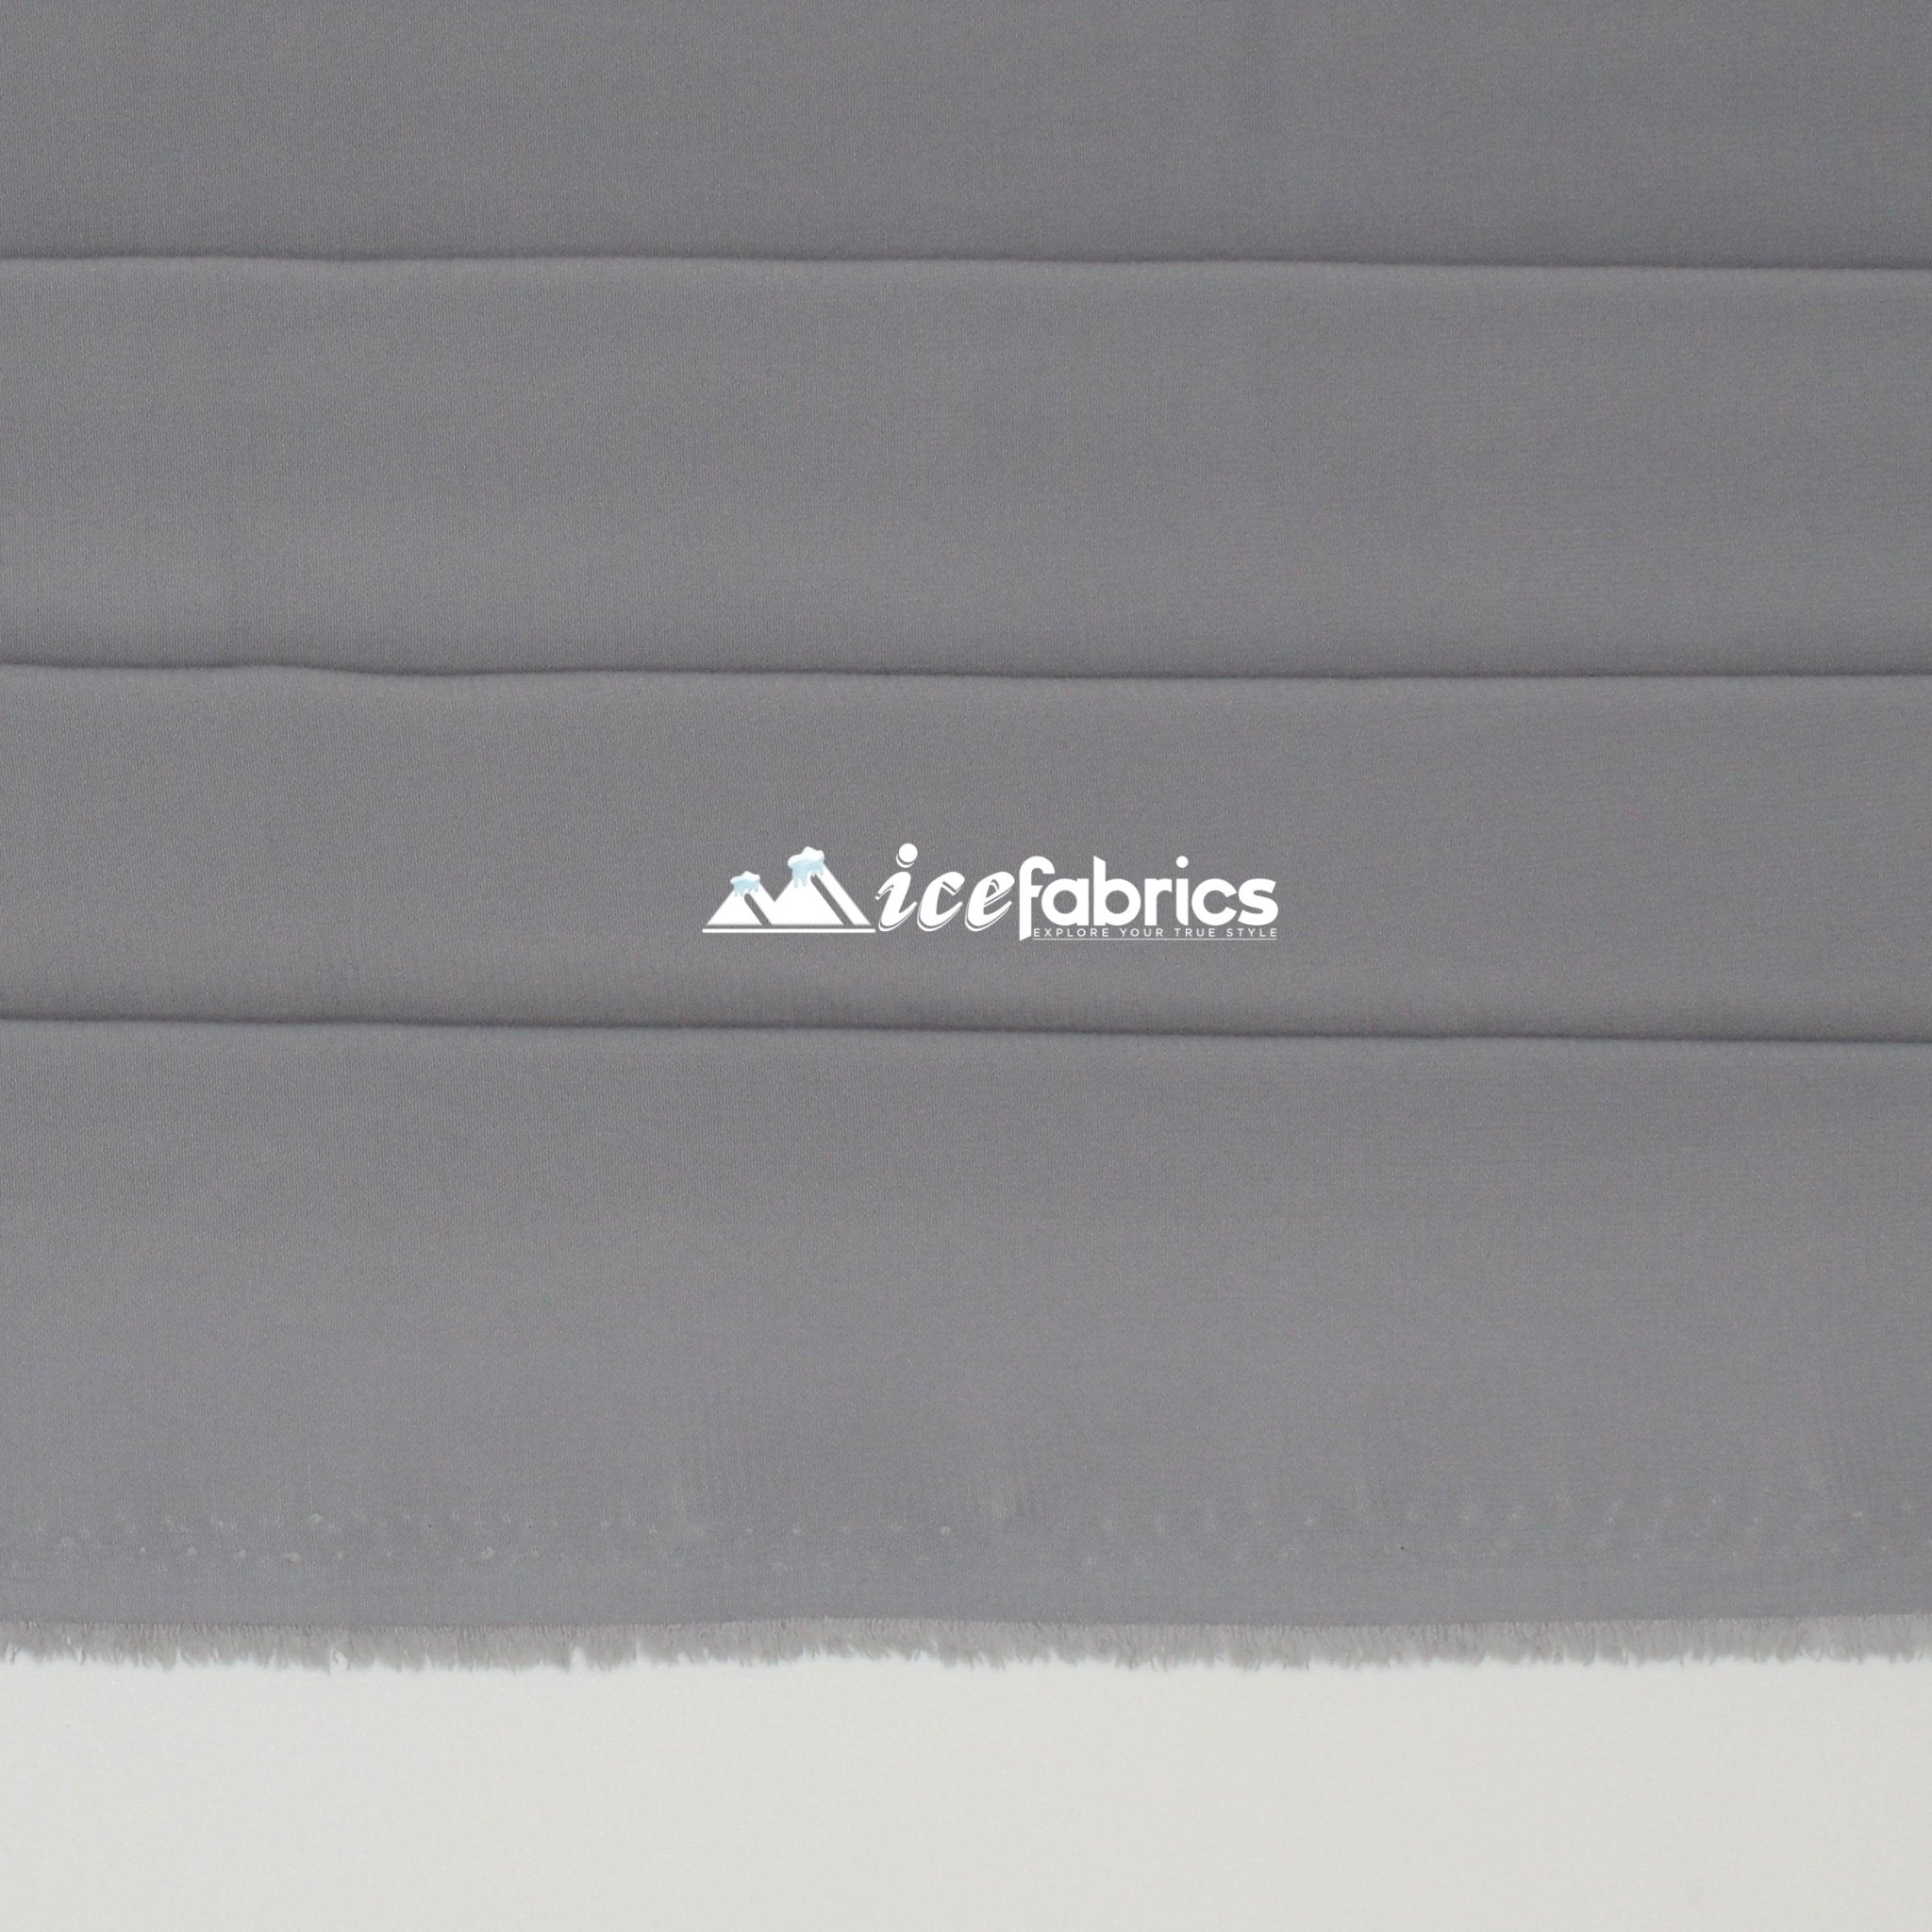 Silk Fabric Stretch Chiffon Fabric/ Spandex Fabric/ SilverChiffon FabricICE FABRICSICE FABRICSSilverPer YardSilk Fabric Stretch Chiffon Fabric/ Spandex Fabric/ Silver ICE FABRICS